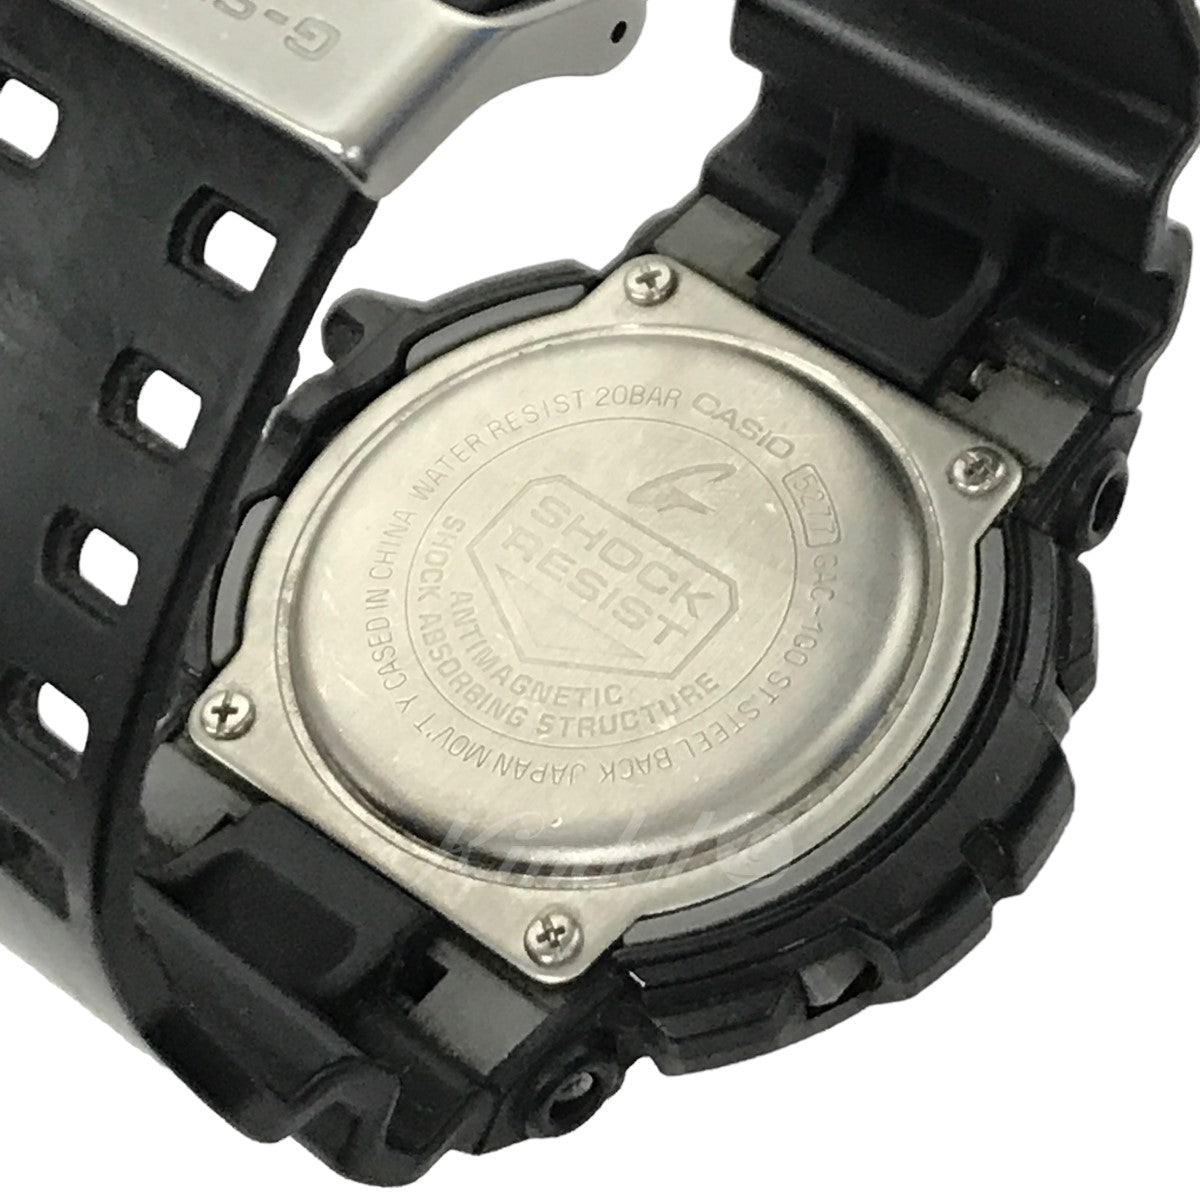 CASIO G-SHOCK(カシオ ジーショック) GAC-100-1AJF 腕時計 クロノグラフリストウォッチ